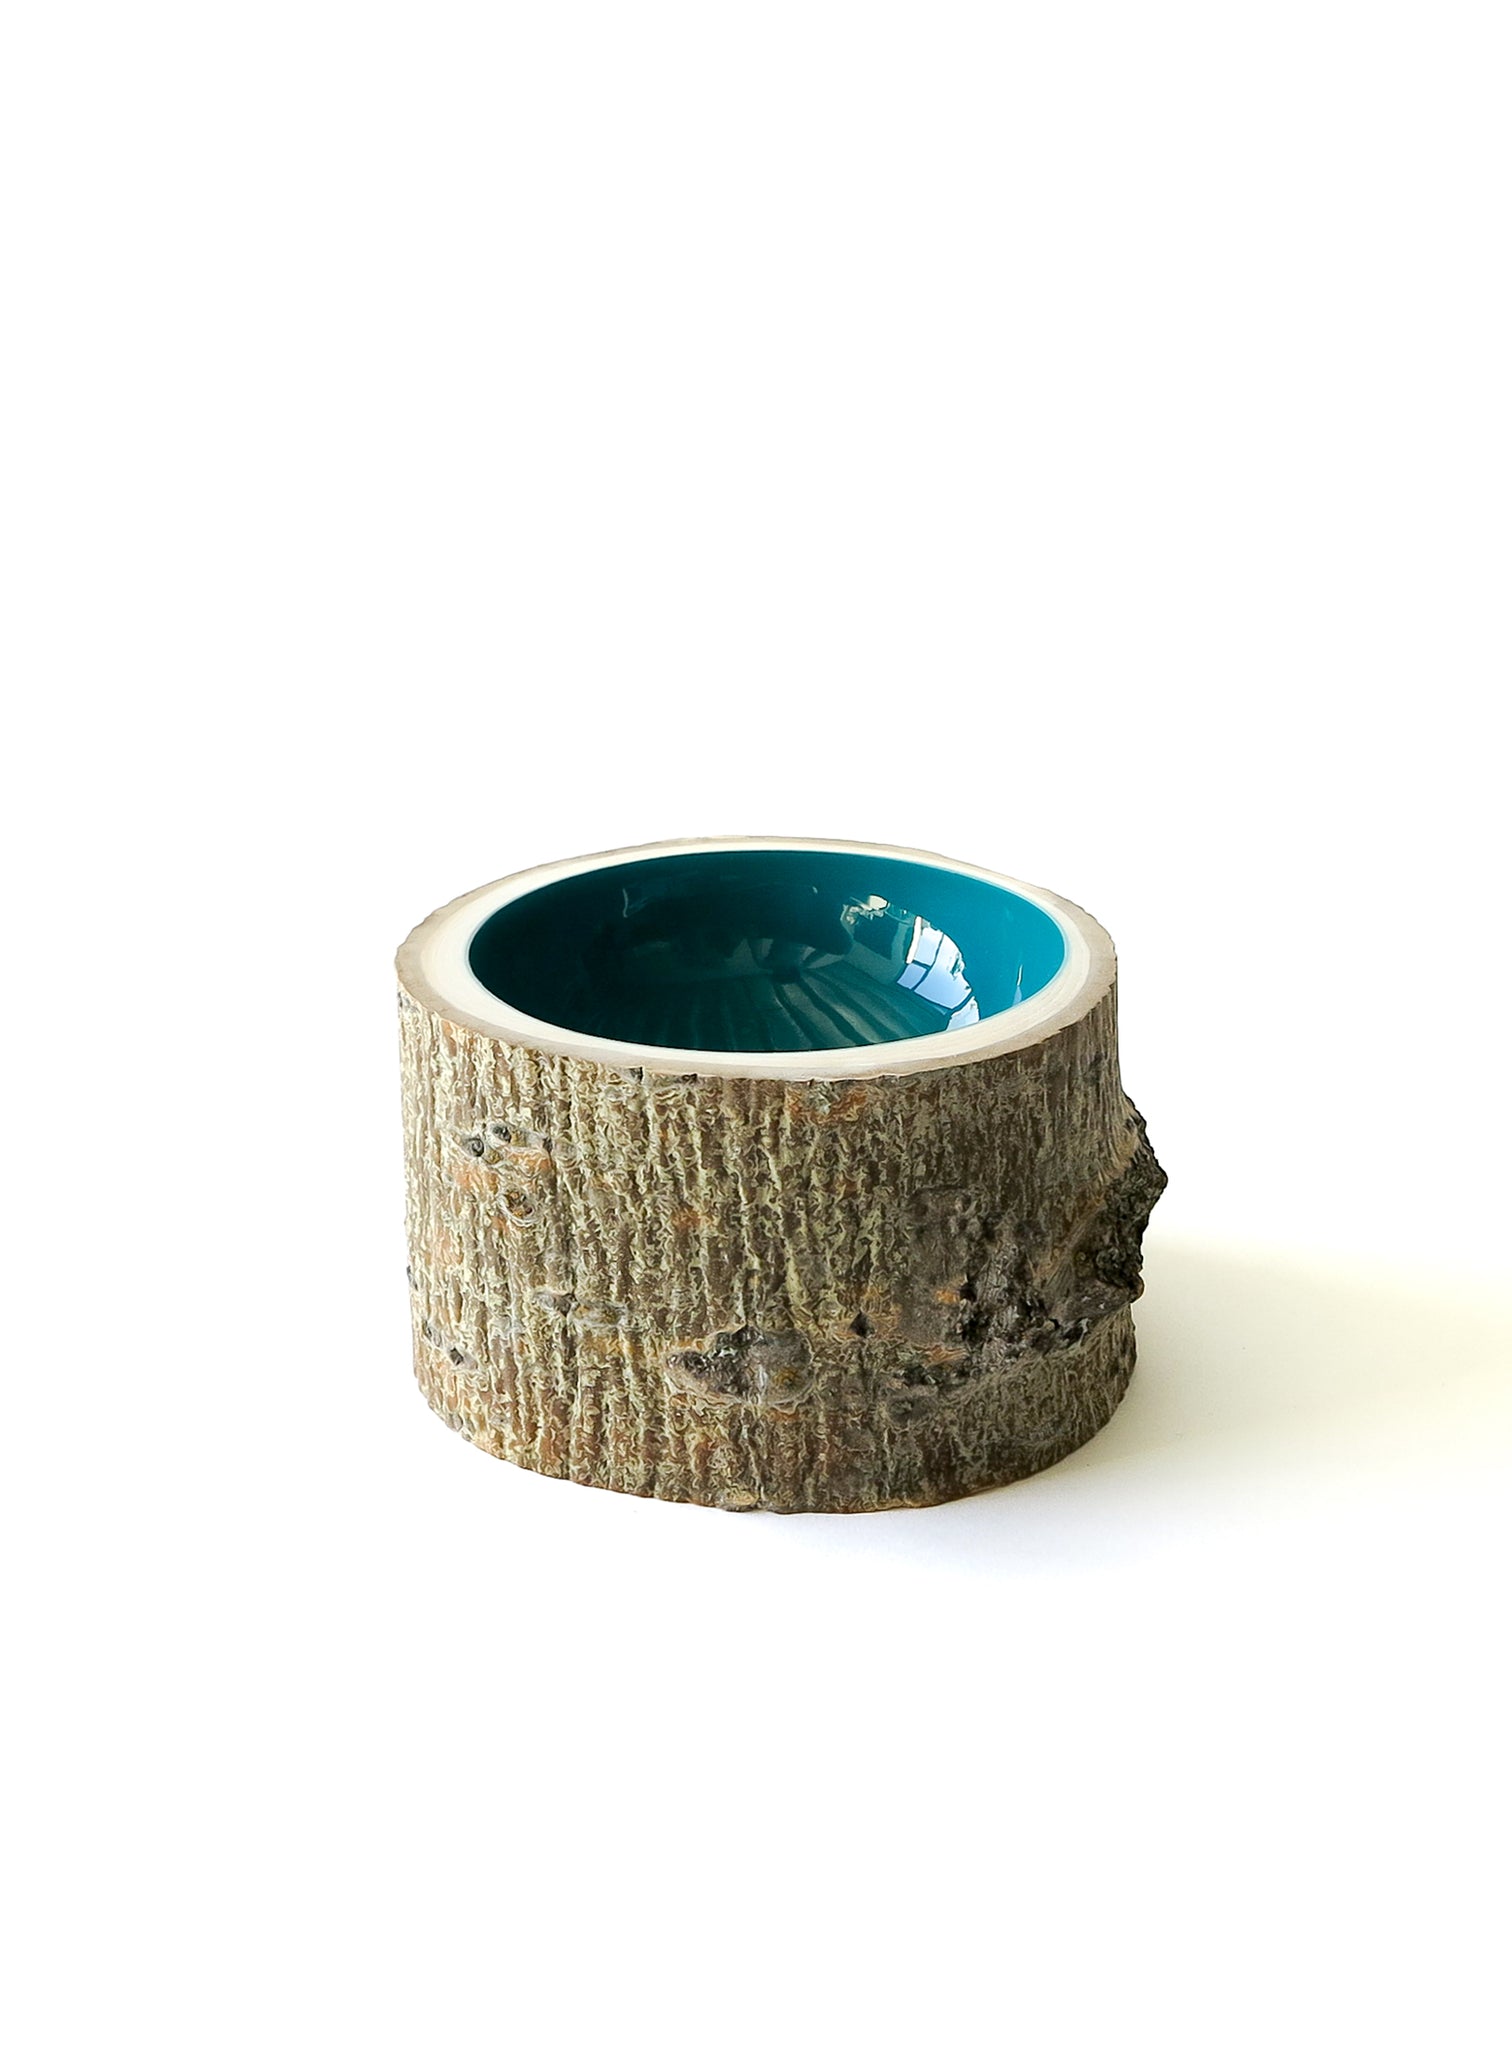 Log Bowl | Size 5 | Turquoise